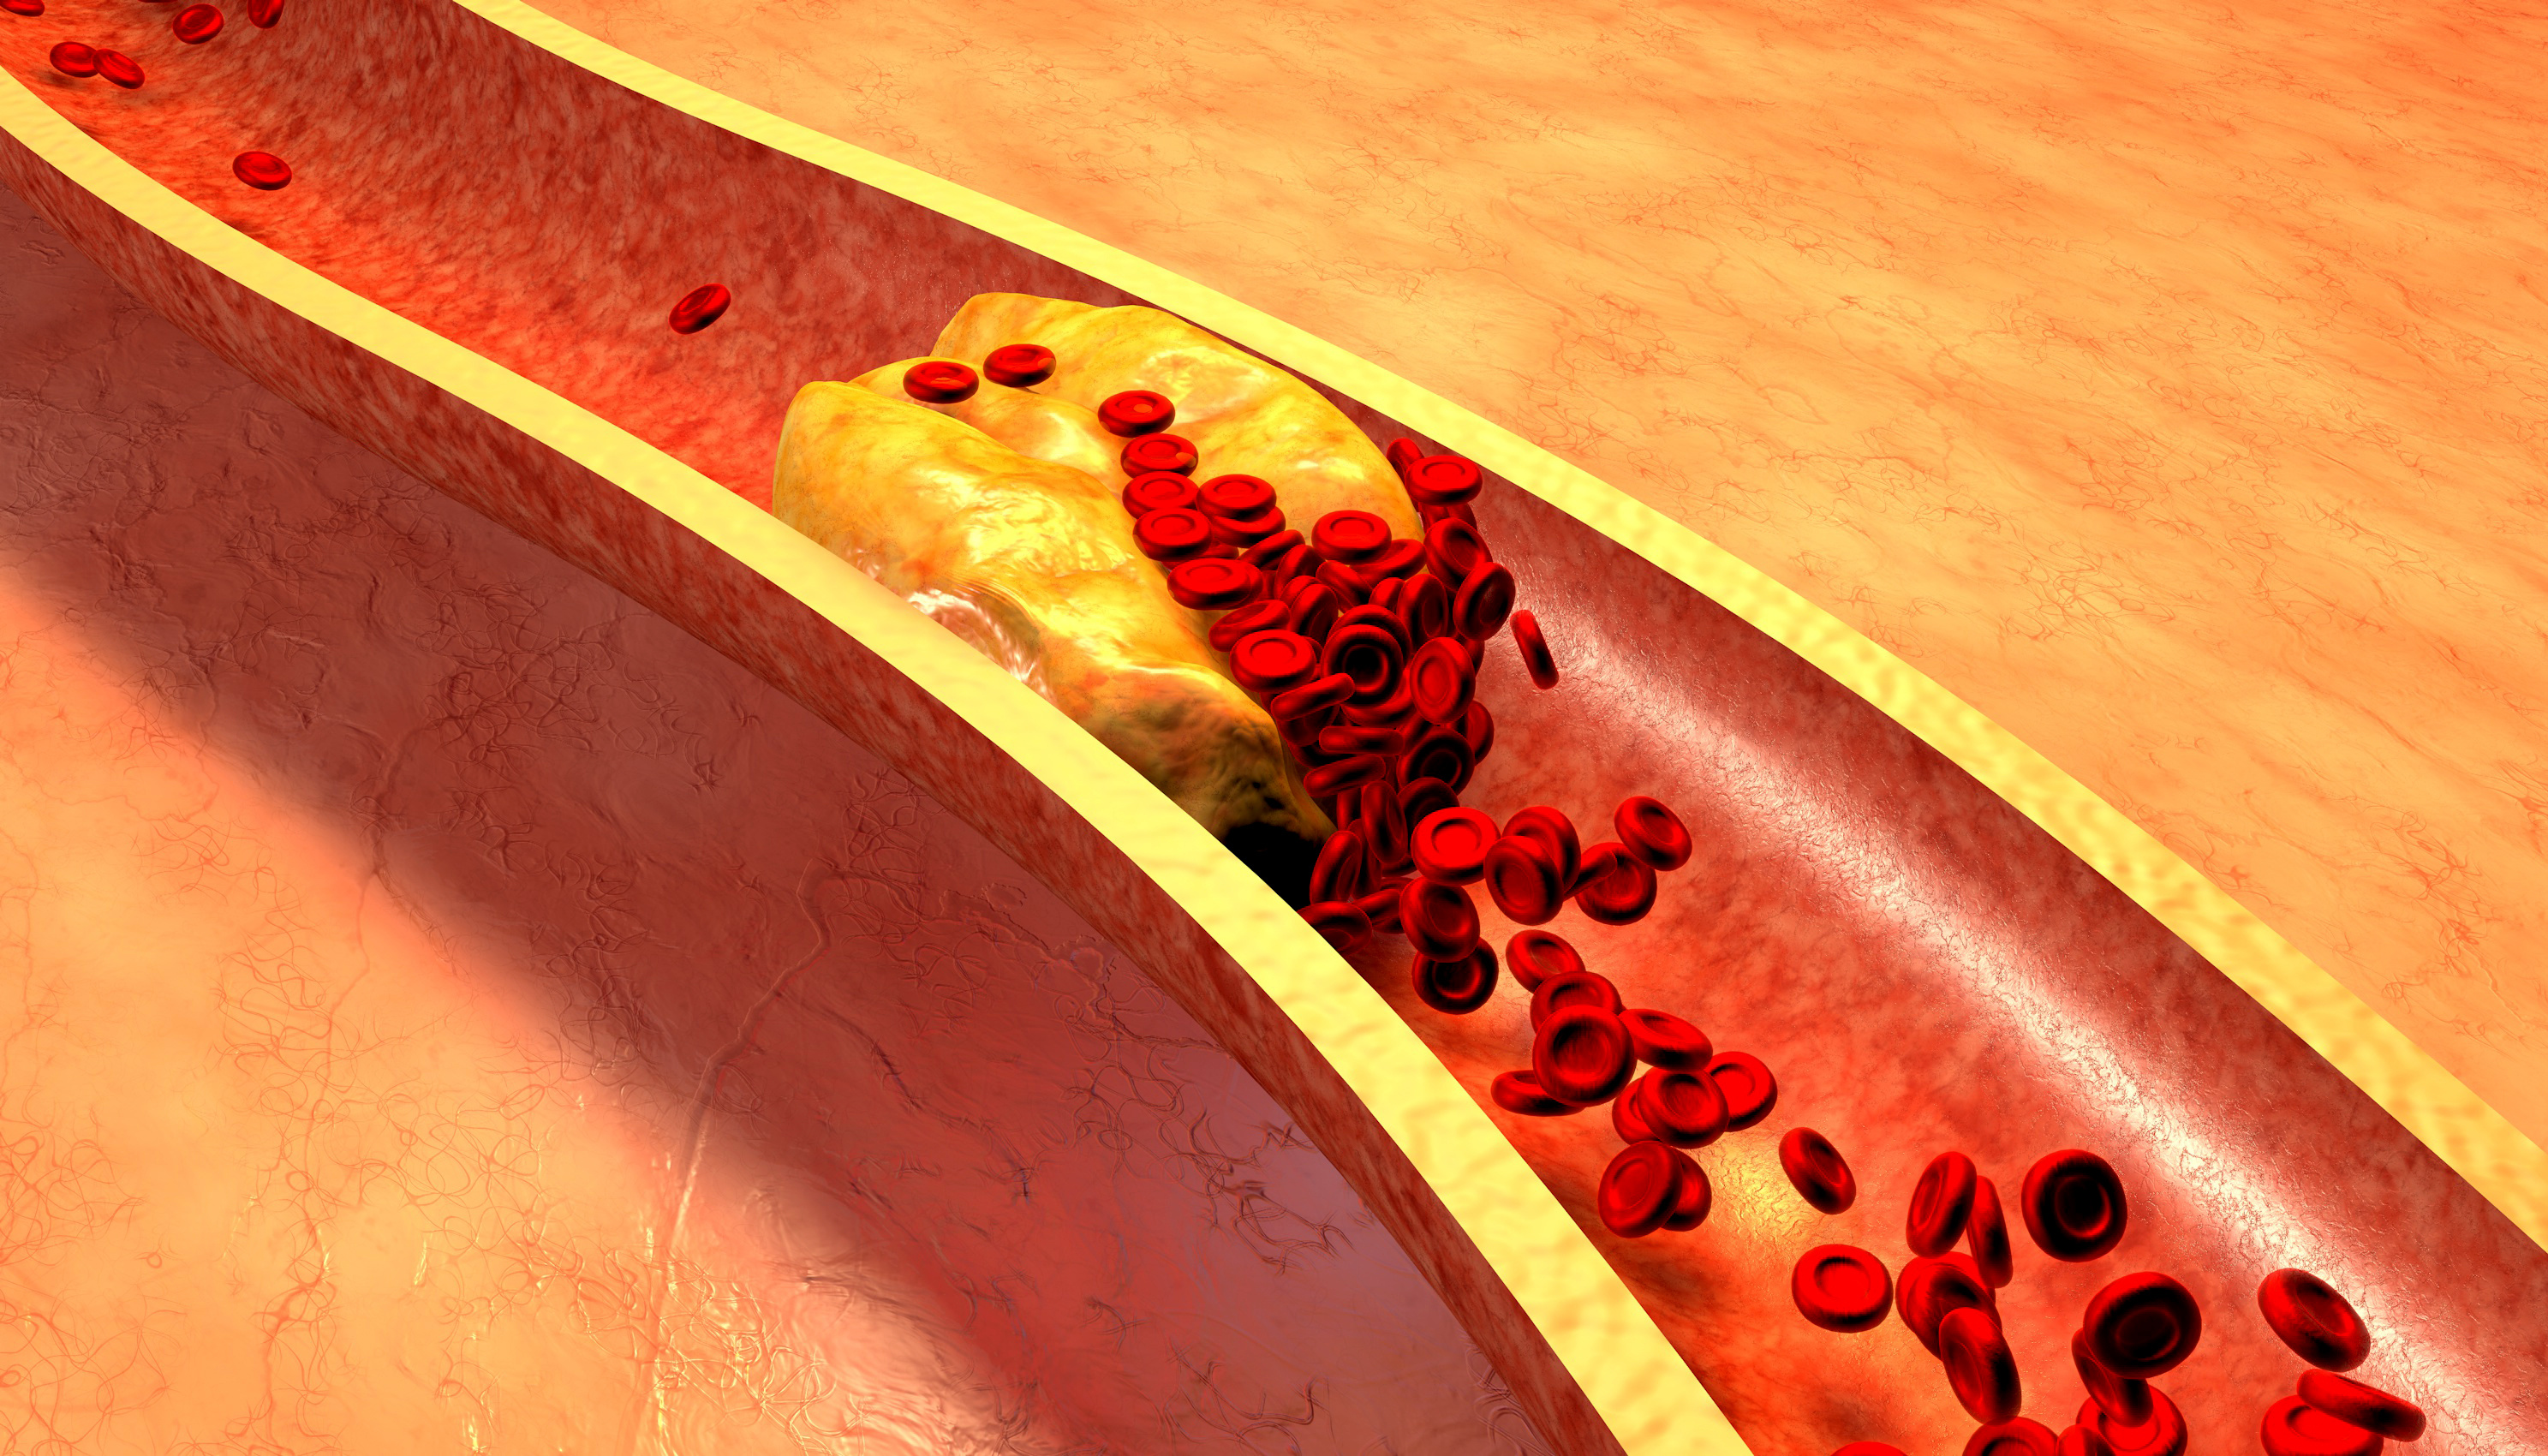 Ablagerungen von Fettstoffen in den Arterien können zu einer Verengung oder einem Verstopfen der Arterien führen, was als Arteriosklerose bezeichnet wird (Quelle: AdobeStock_79614760)